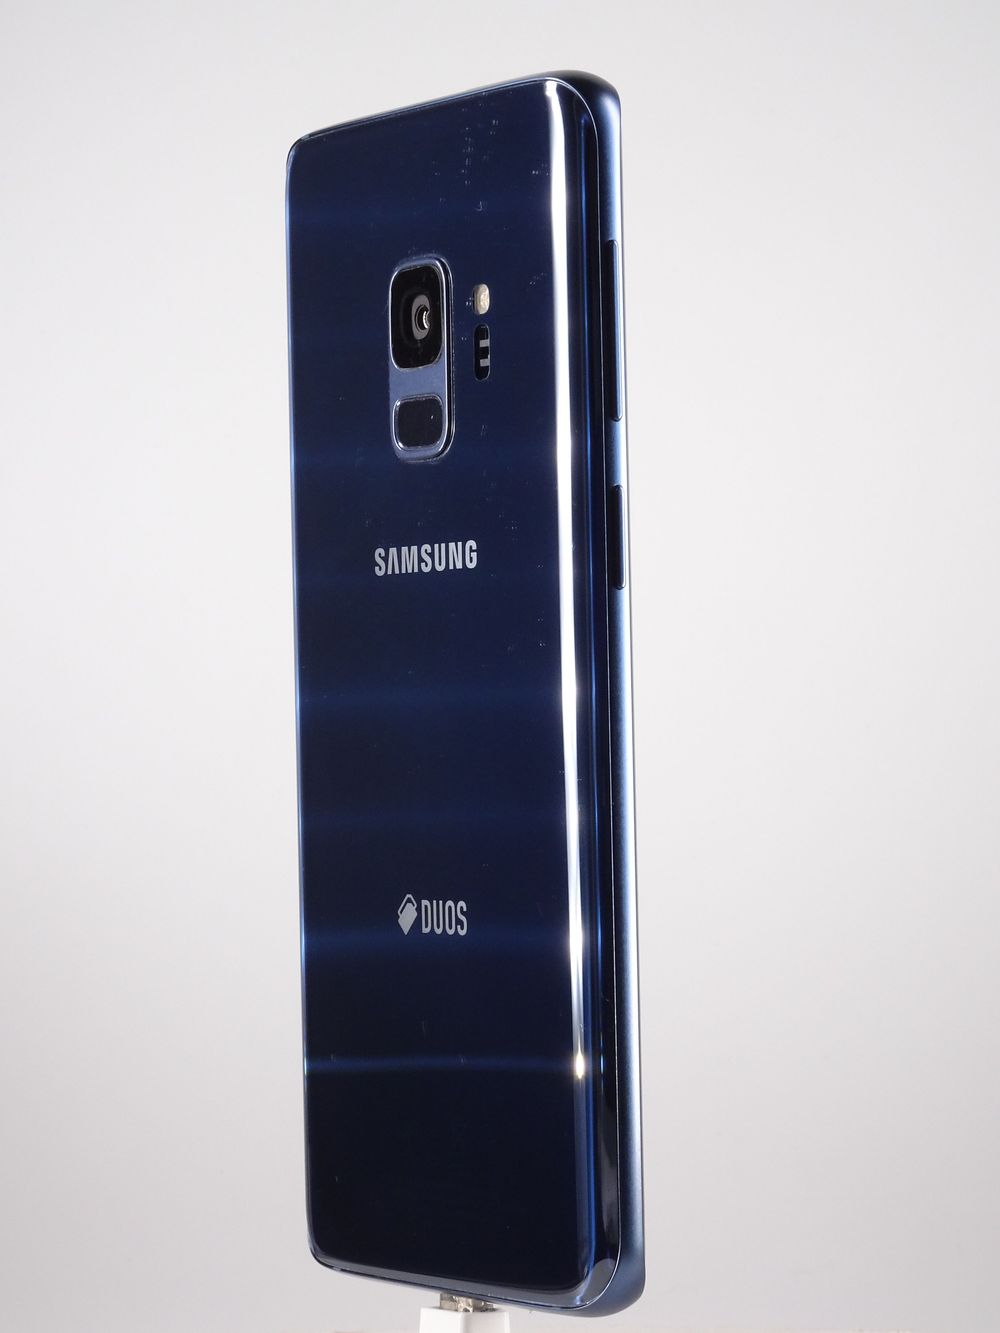 Мобилен телефон Samsung, Galaxy S9, 64 GB, Blue,  Като нов